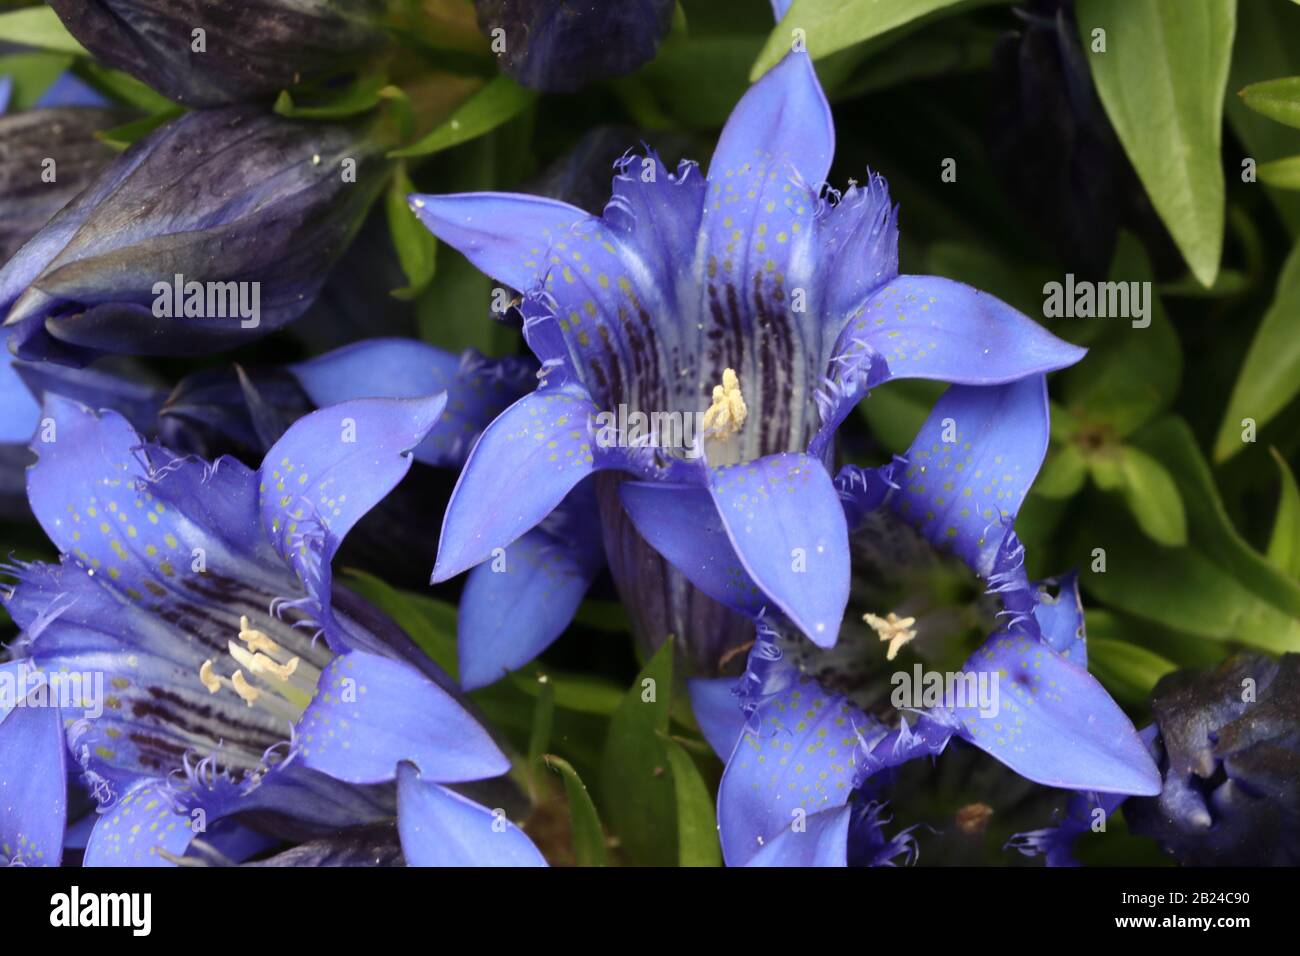 Gentiana paradoxa es una especie de planta con flores perteneciente a la familia Gentianaceae, endémica de las faldas de las montañas Del Cáucaso. Foto de stock